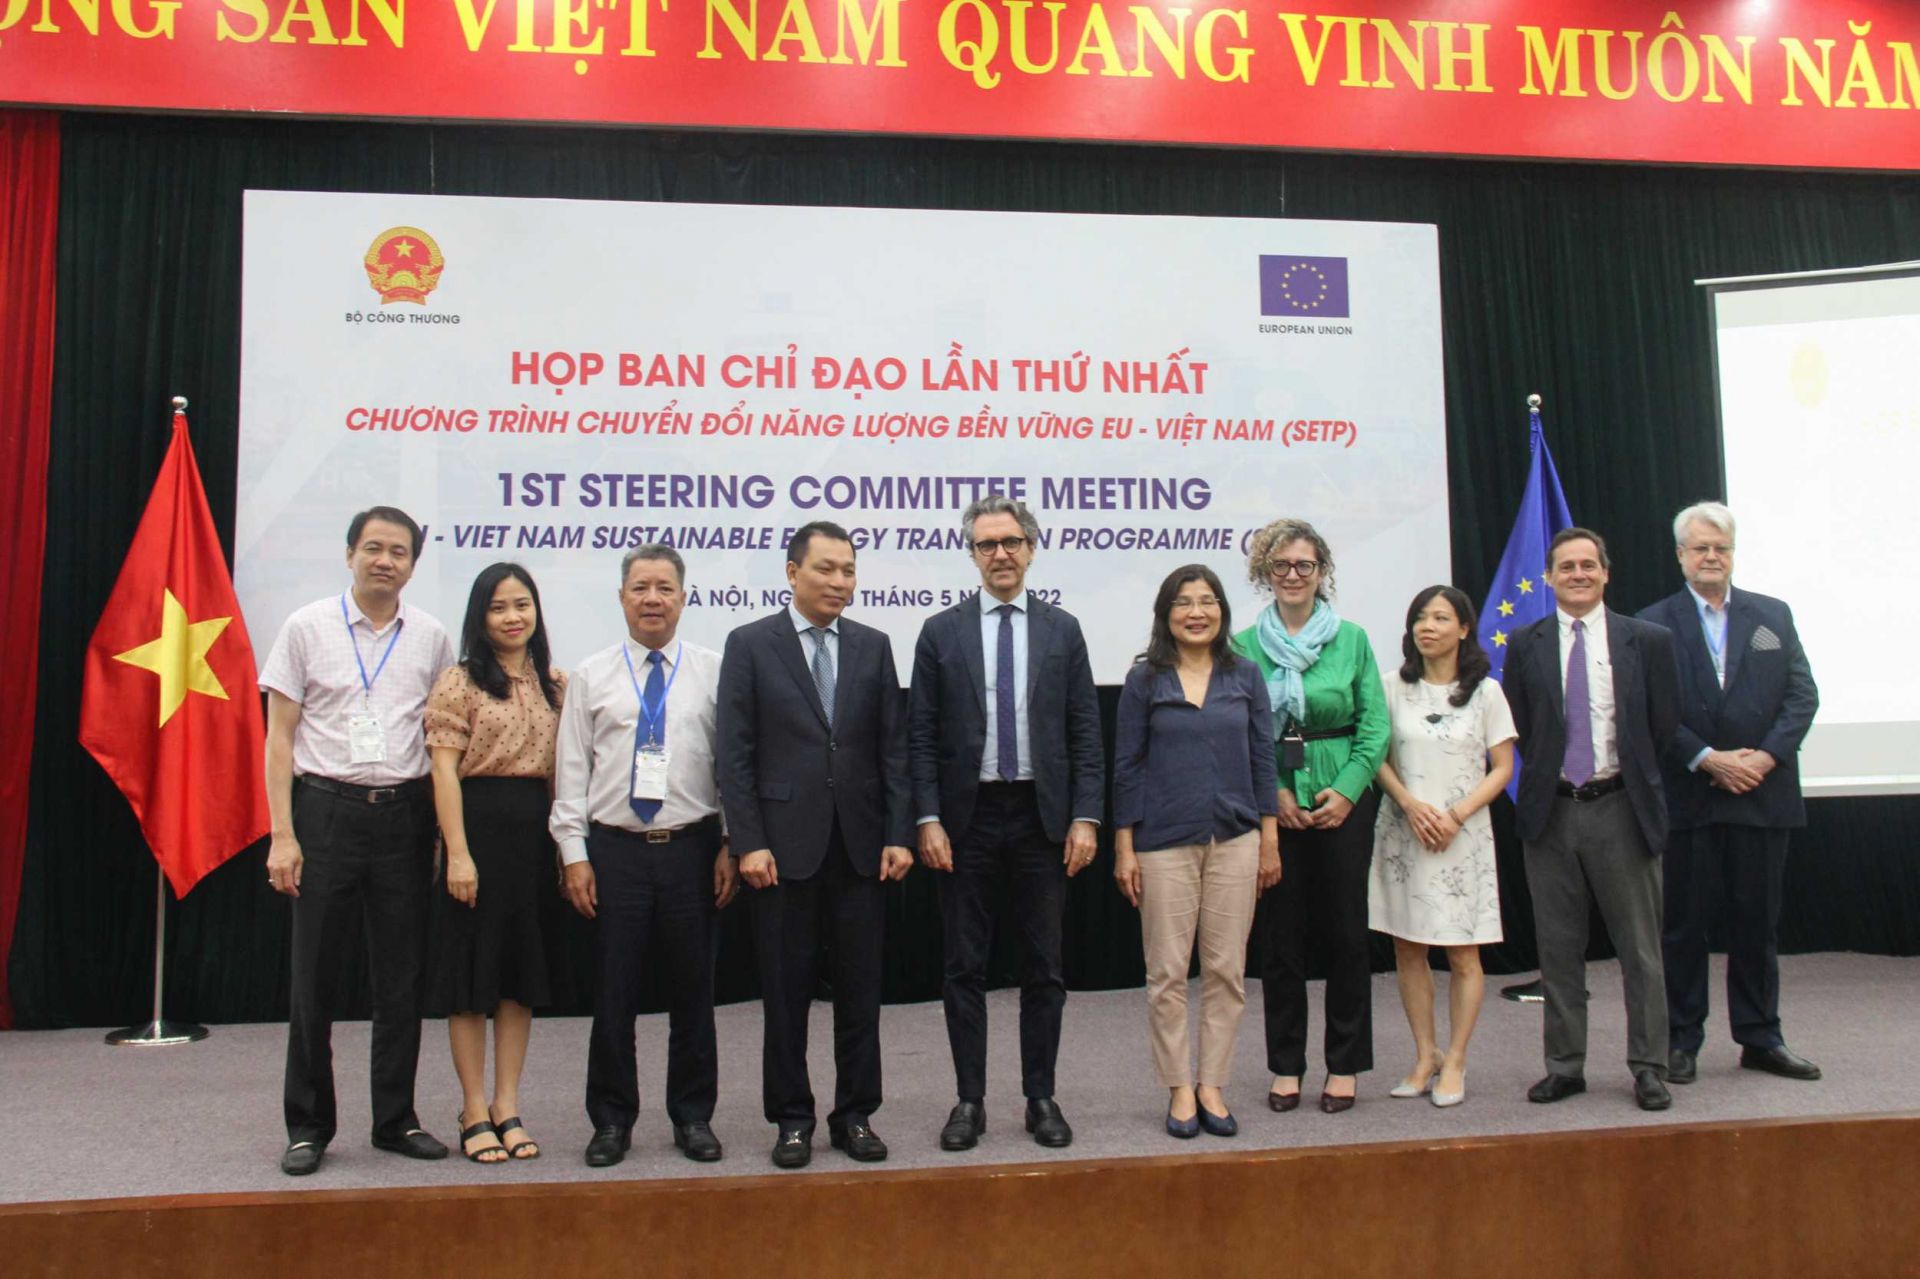 Phiên họp lần thứ nhất và Lễ ra mắt Ban chỉ đạo "Chương trình chuyển đổi năng lượng bền vững Việt Nam - EU" (SETP) với sự tham dự của Đại sứ Liên minh châu Âu Giorgio Aliberti và Thứ trưởng Bộ Công Thương Đặng Hoàng An 